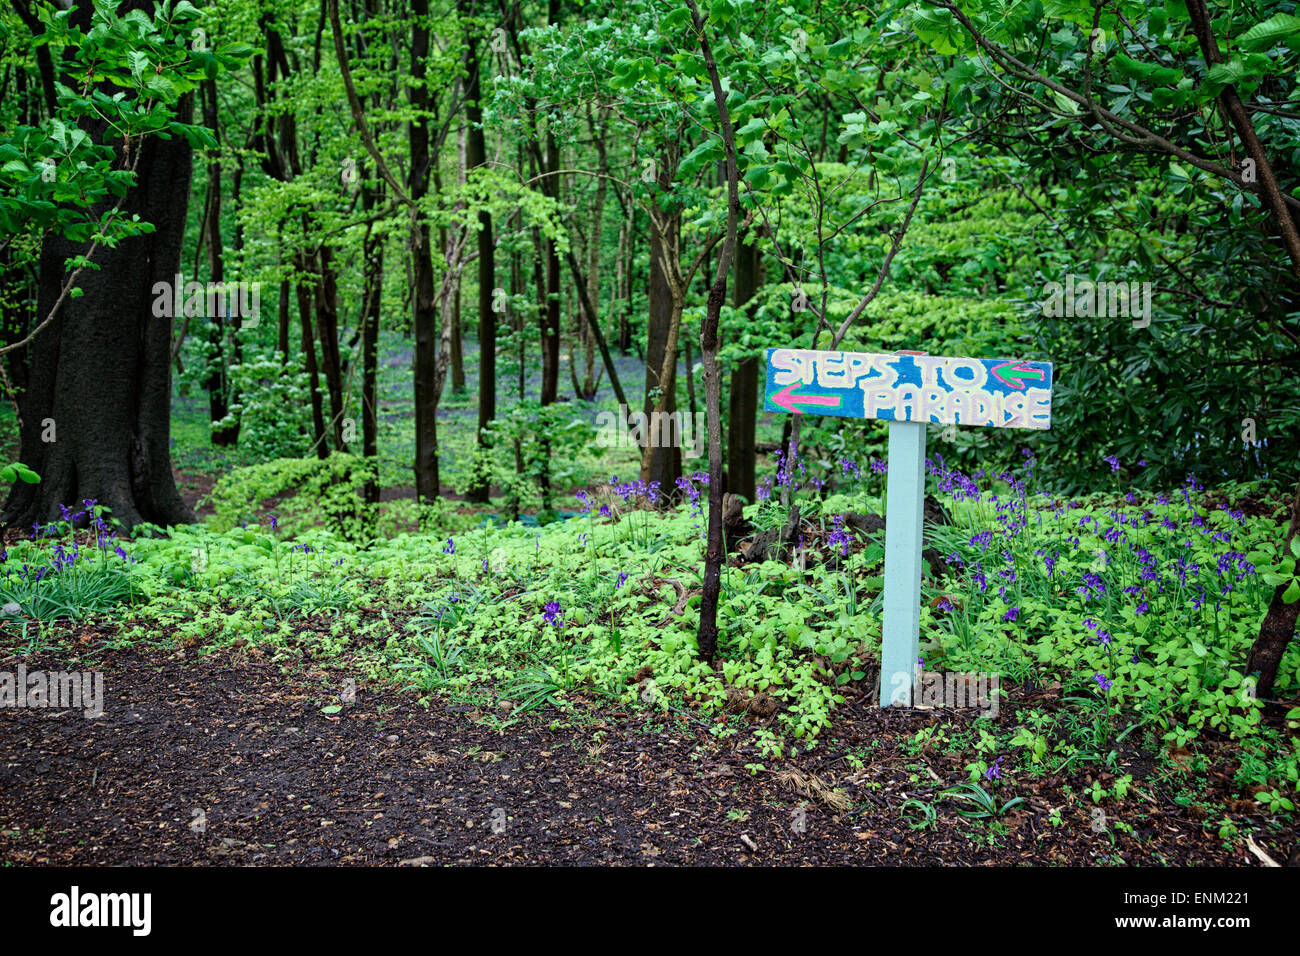 Ein Zeichen für "Eco Village" in Runnymede Wald eingerichtet, indem eine alternative Lifestyle-Community. Stockfoto